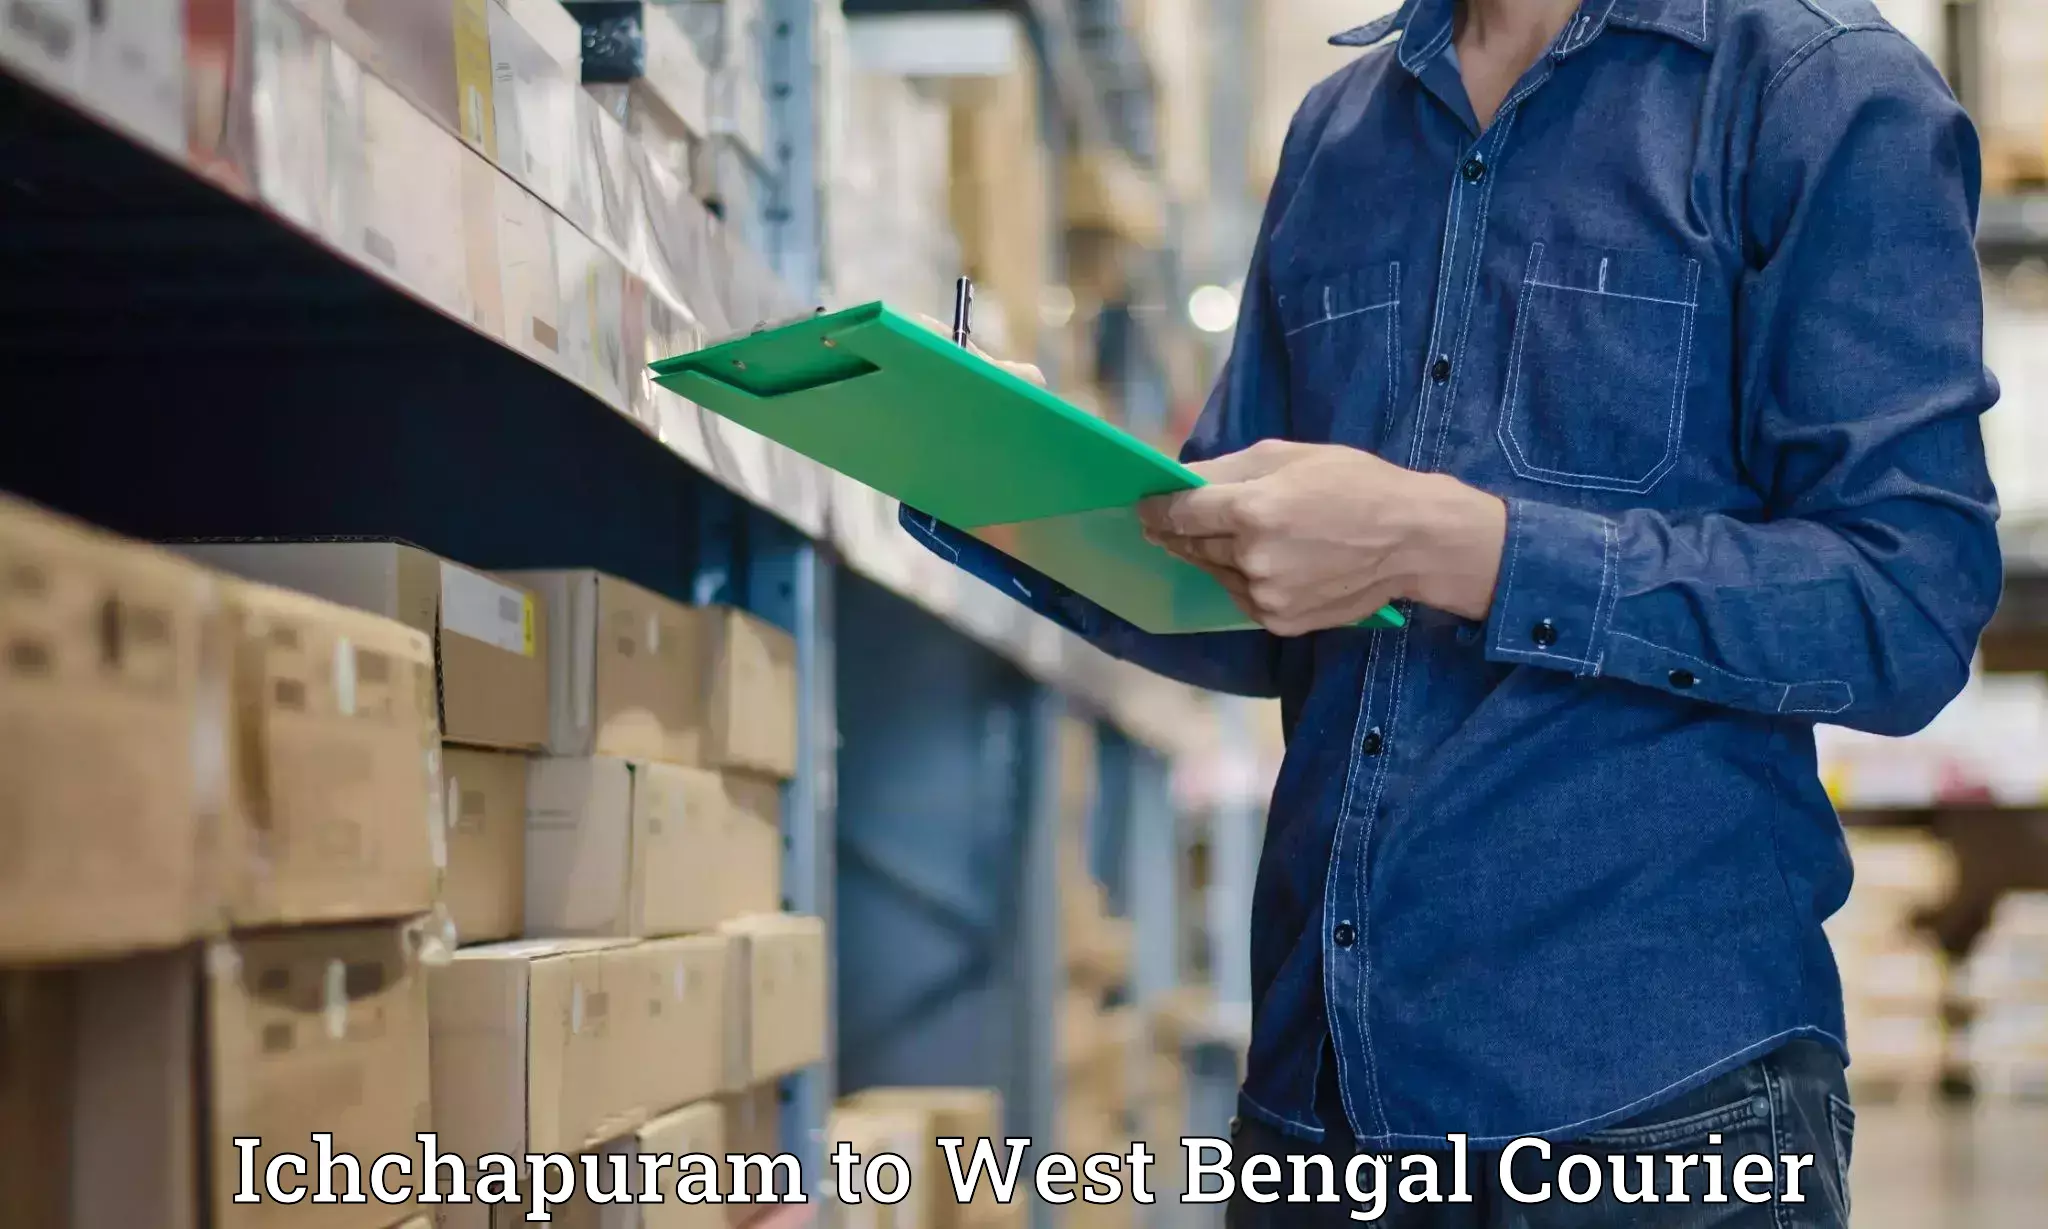 Specialized shipment handling Ichchapuram to Maheshtala